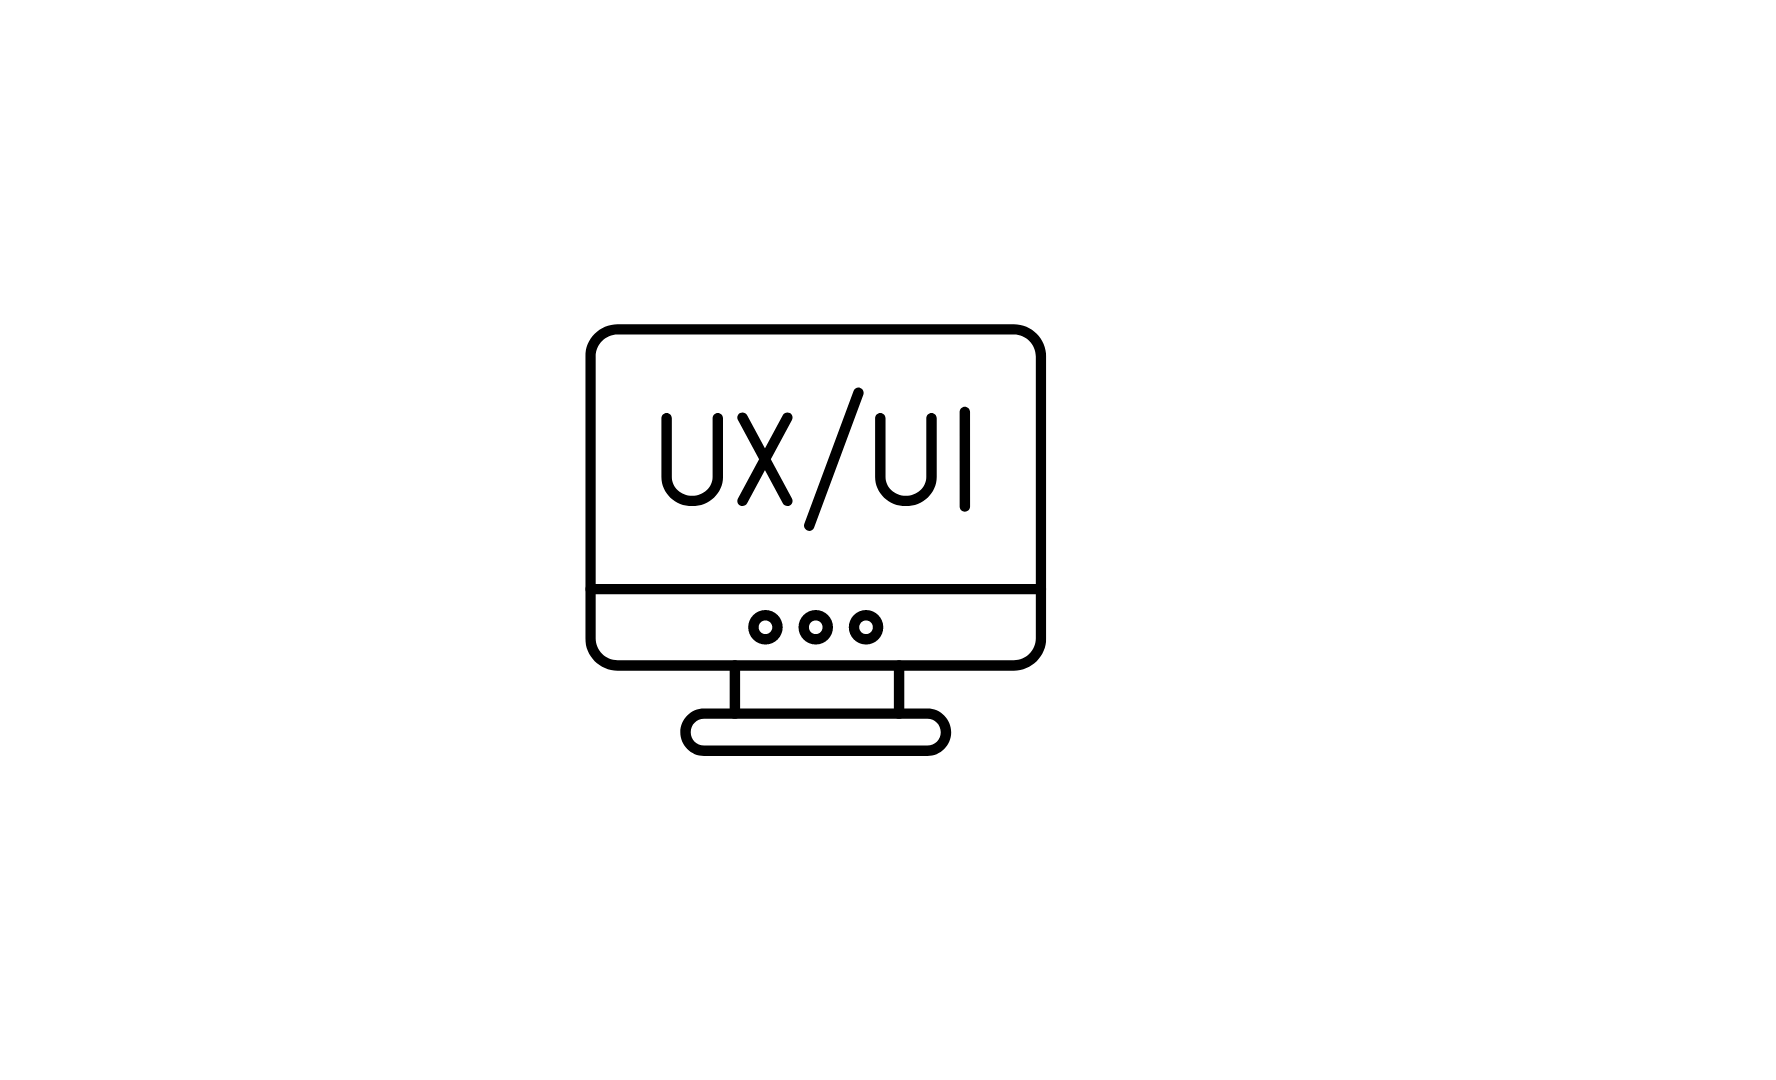 UI/UX logo